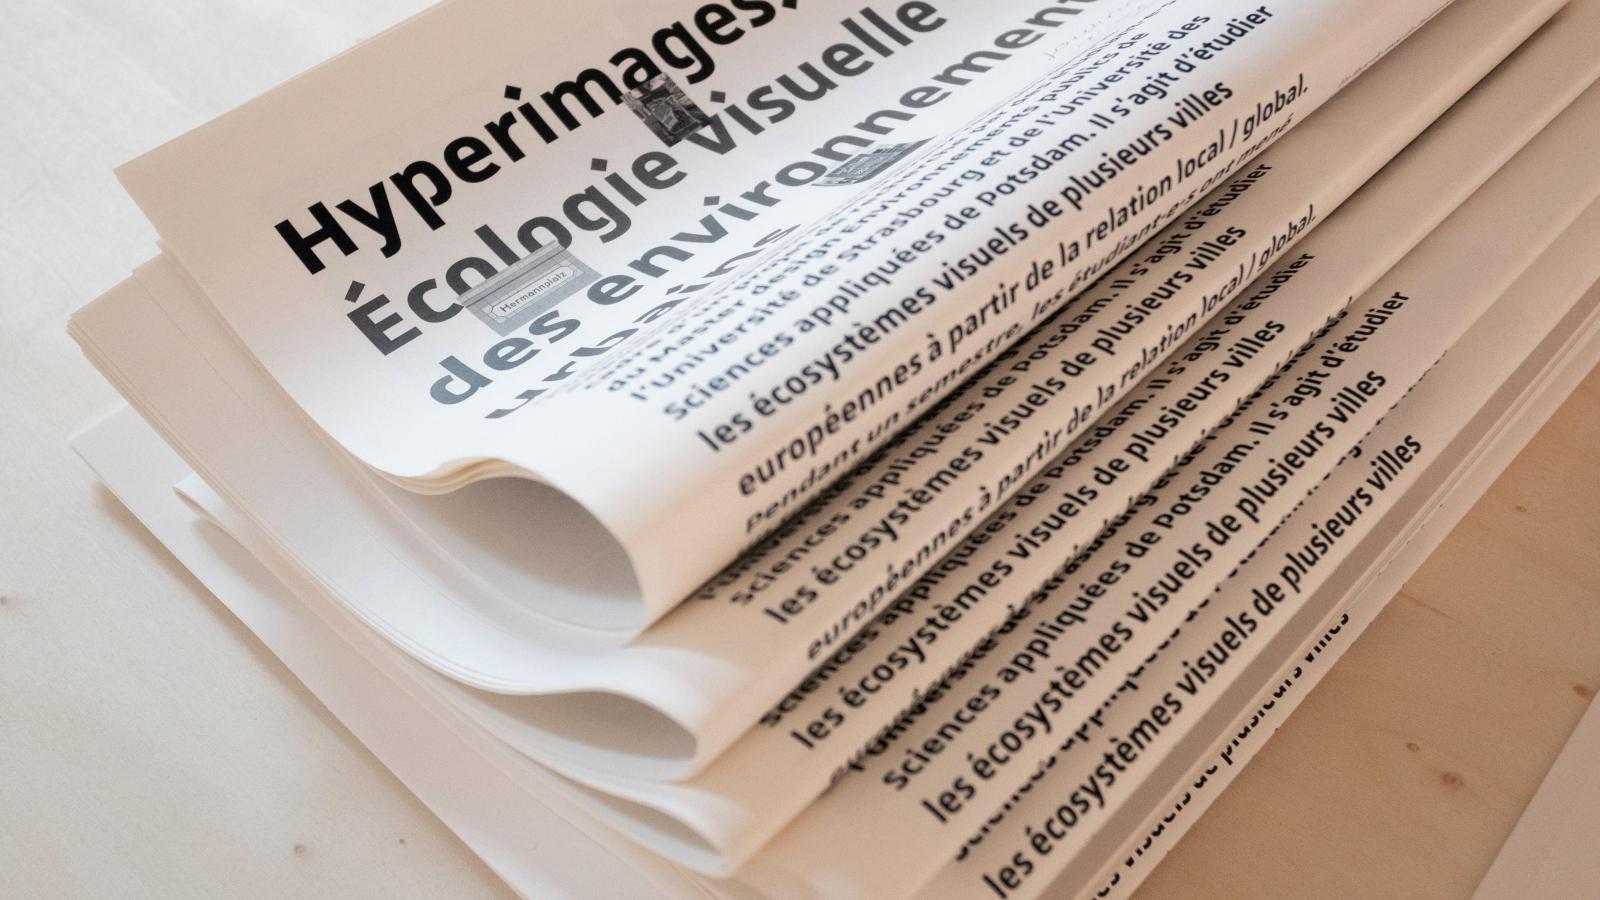 Zeitungspapier mit der Titelaufschrift Hyperimages Écologie visuelle des environnements urbains